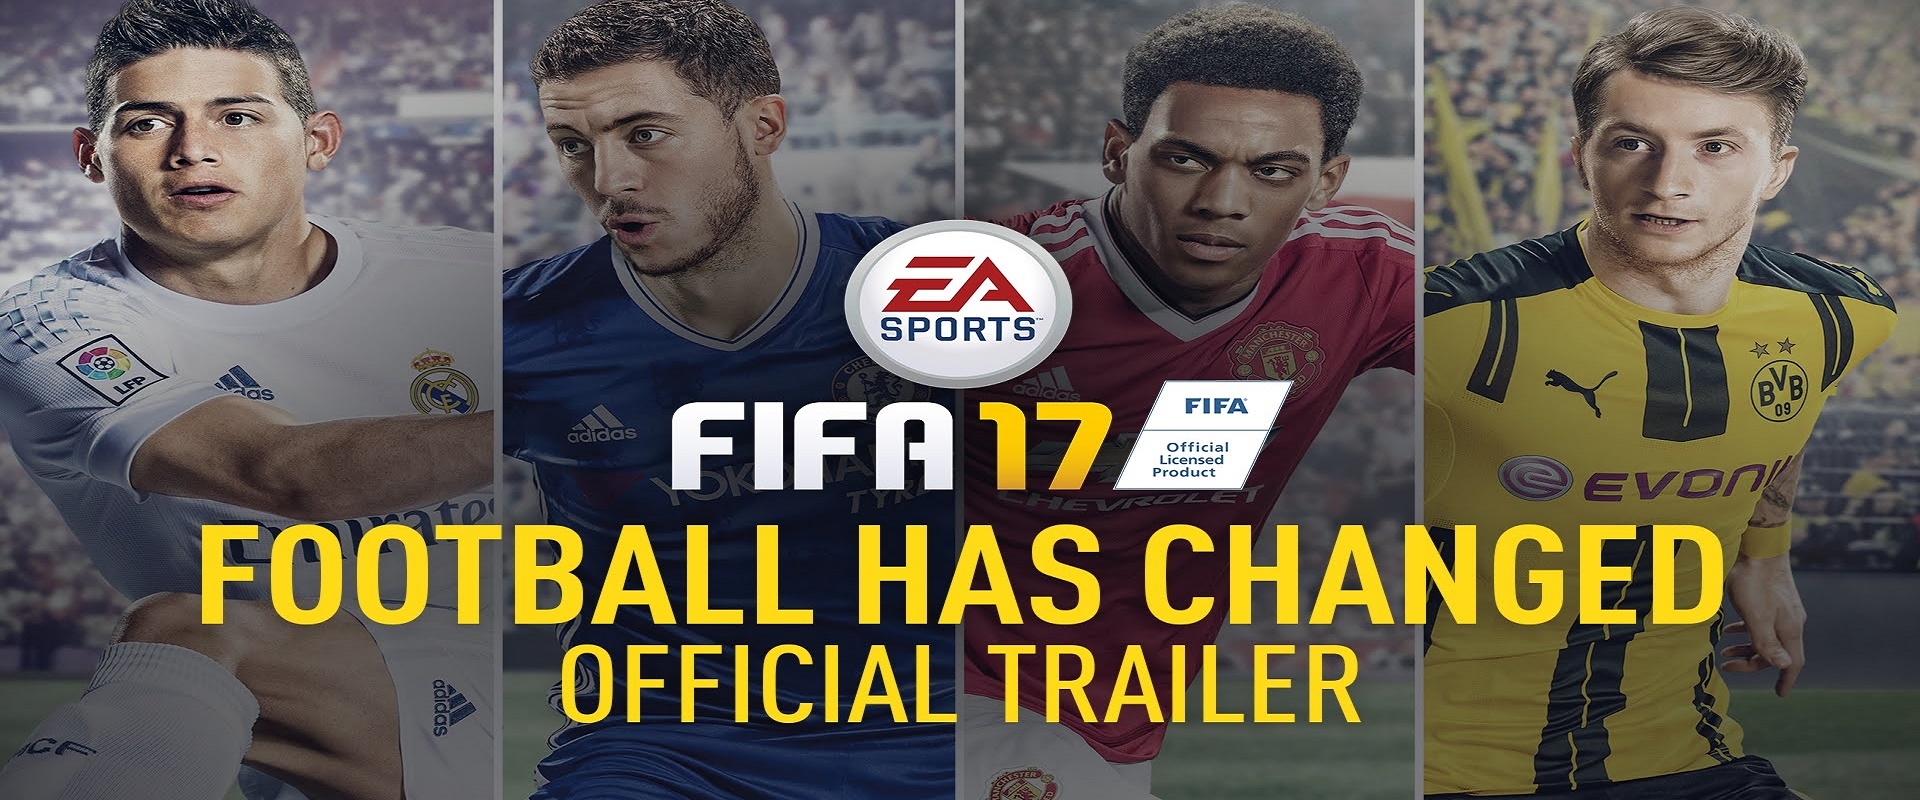 Új trailert és játékmódot kaptunk a FIFA17-hez!